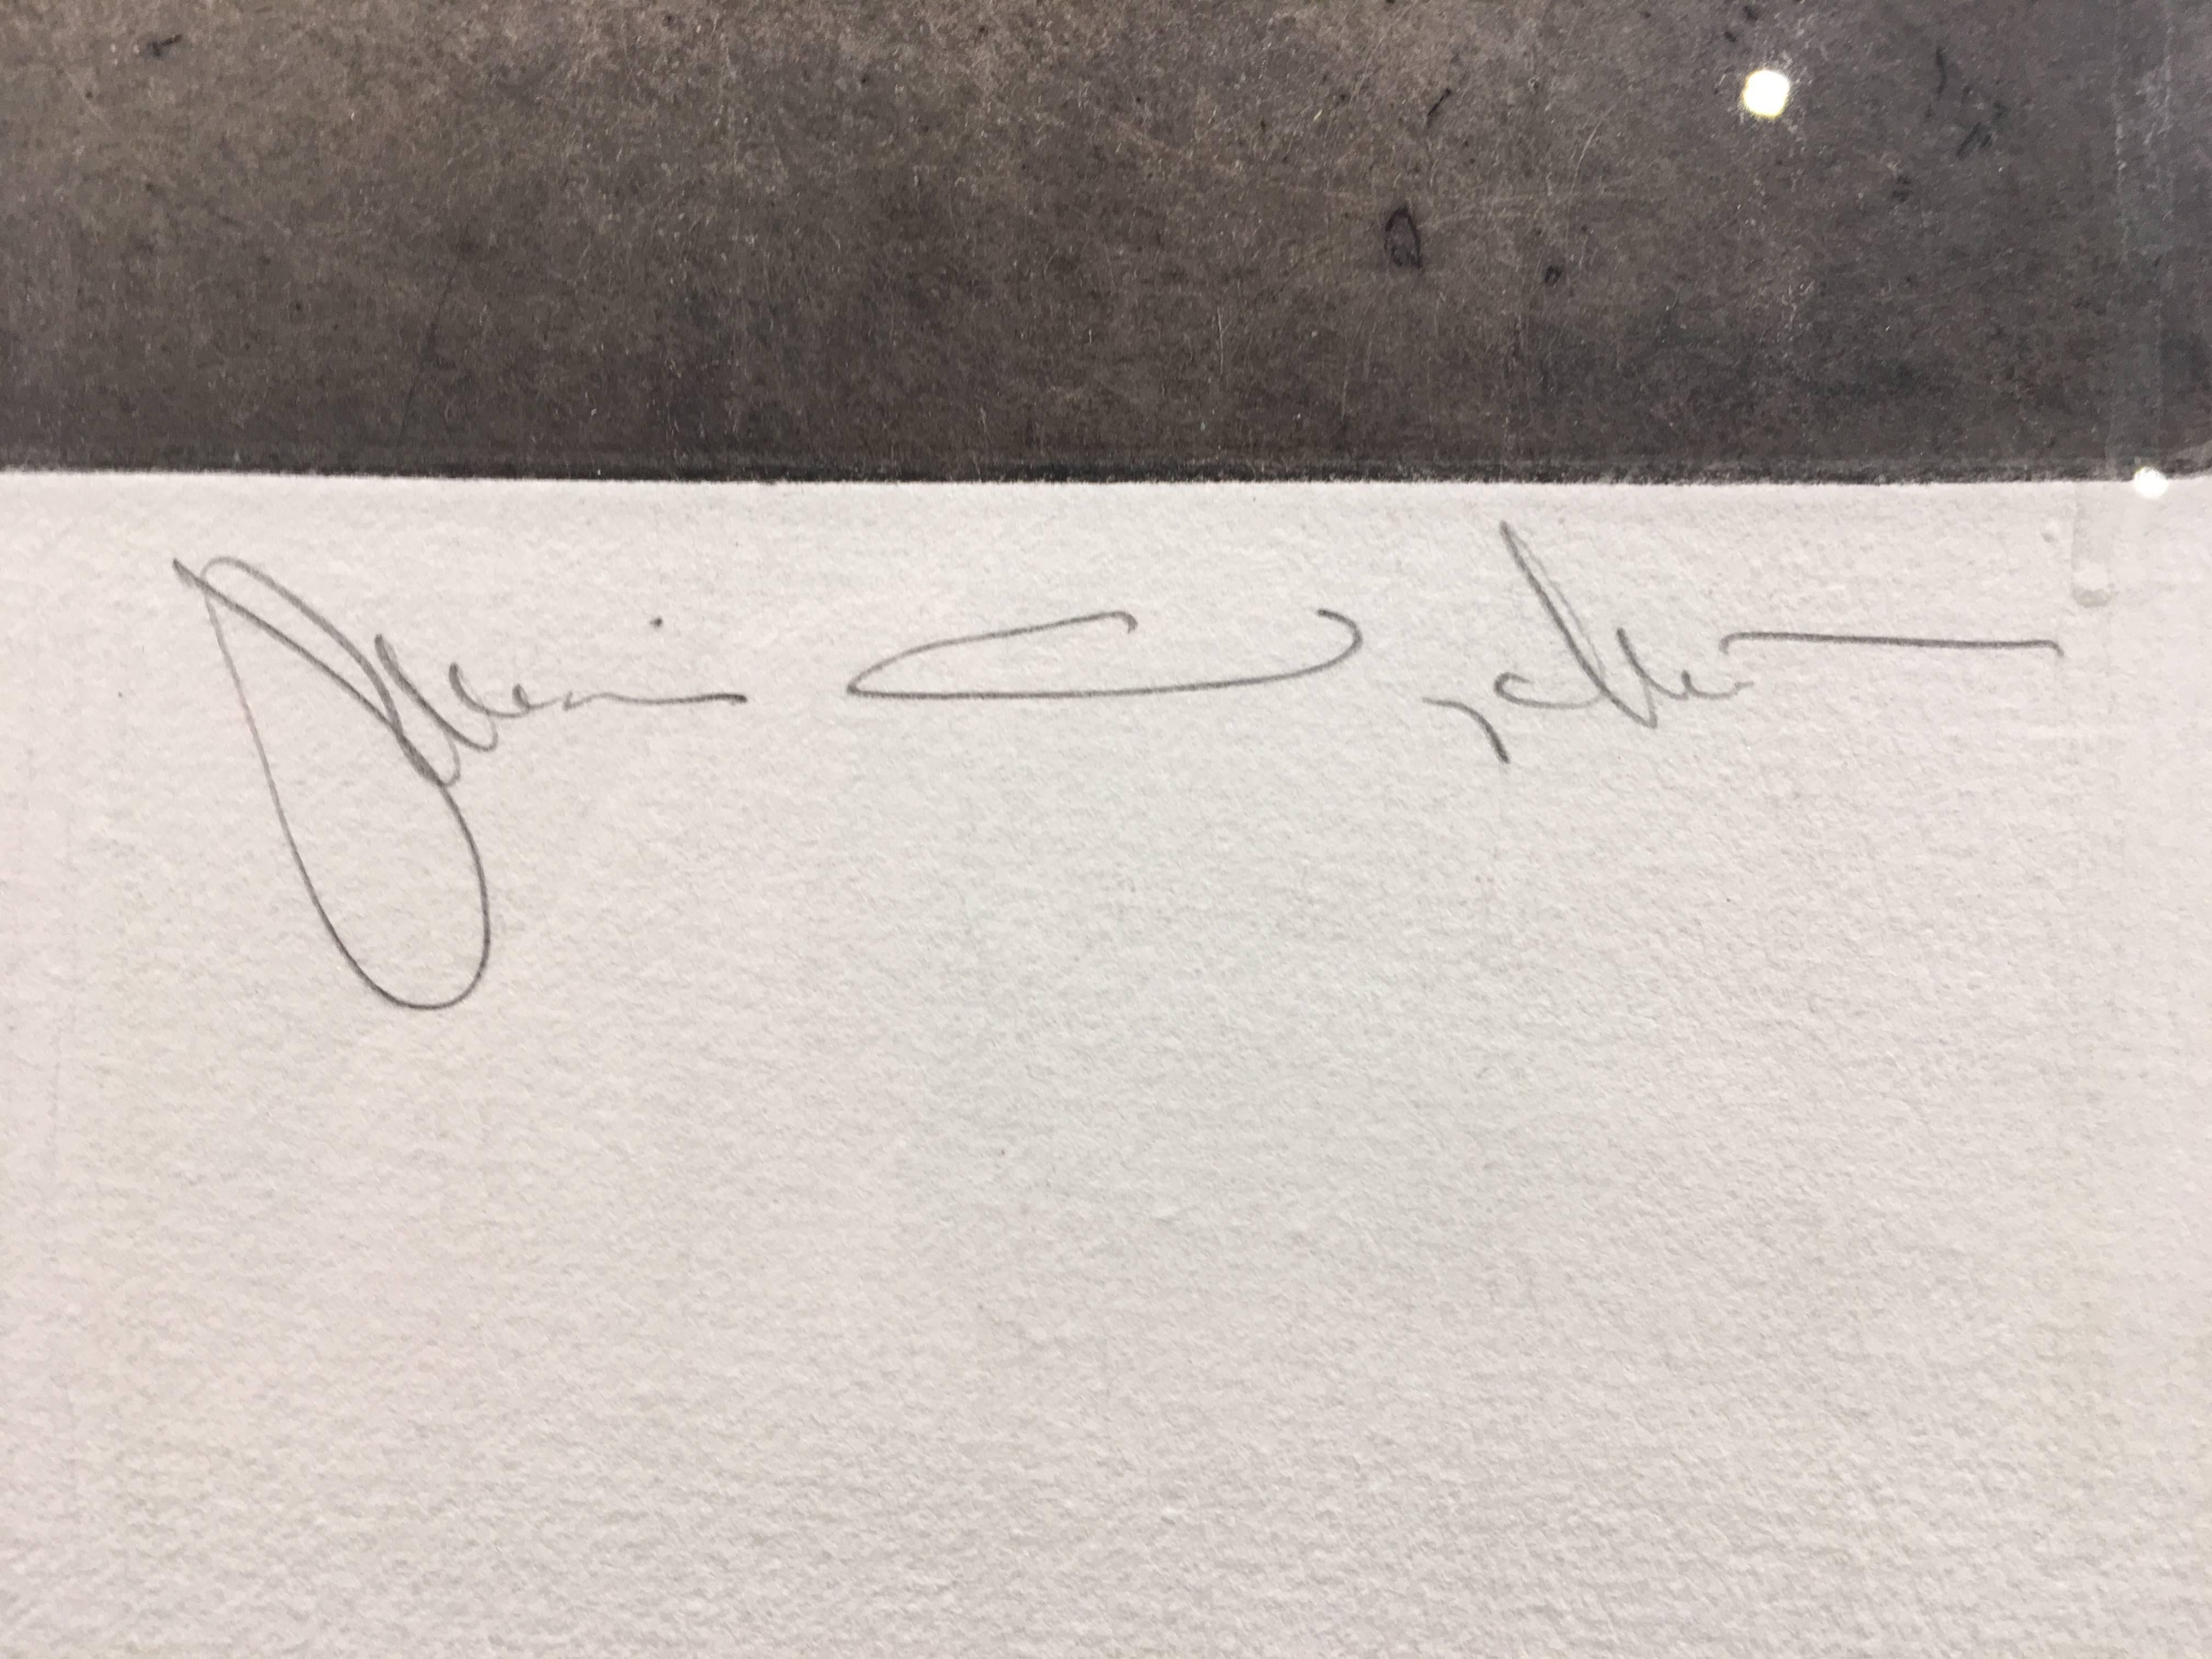 Edition 108/150, encadrée
Taille de la feuille : 25 x 20 pouces
Taille de l'image : 9.75 x 9.75 pouces
Taille du cadre : 28 x 23 pouces
Signé en bas à gauche : 108/150
Signé en bas à droite : Jamie Wyeth

Jamie Wyeth (né en 1946) est un artiste de